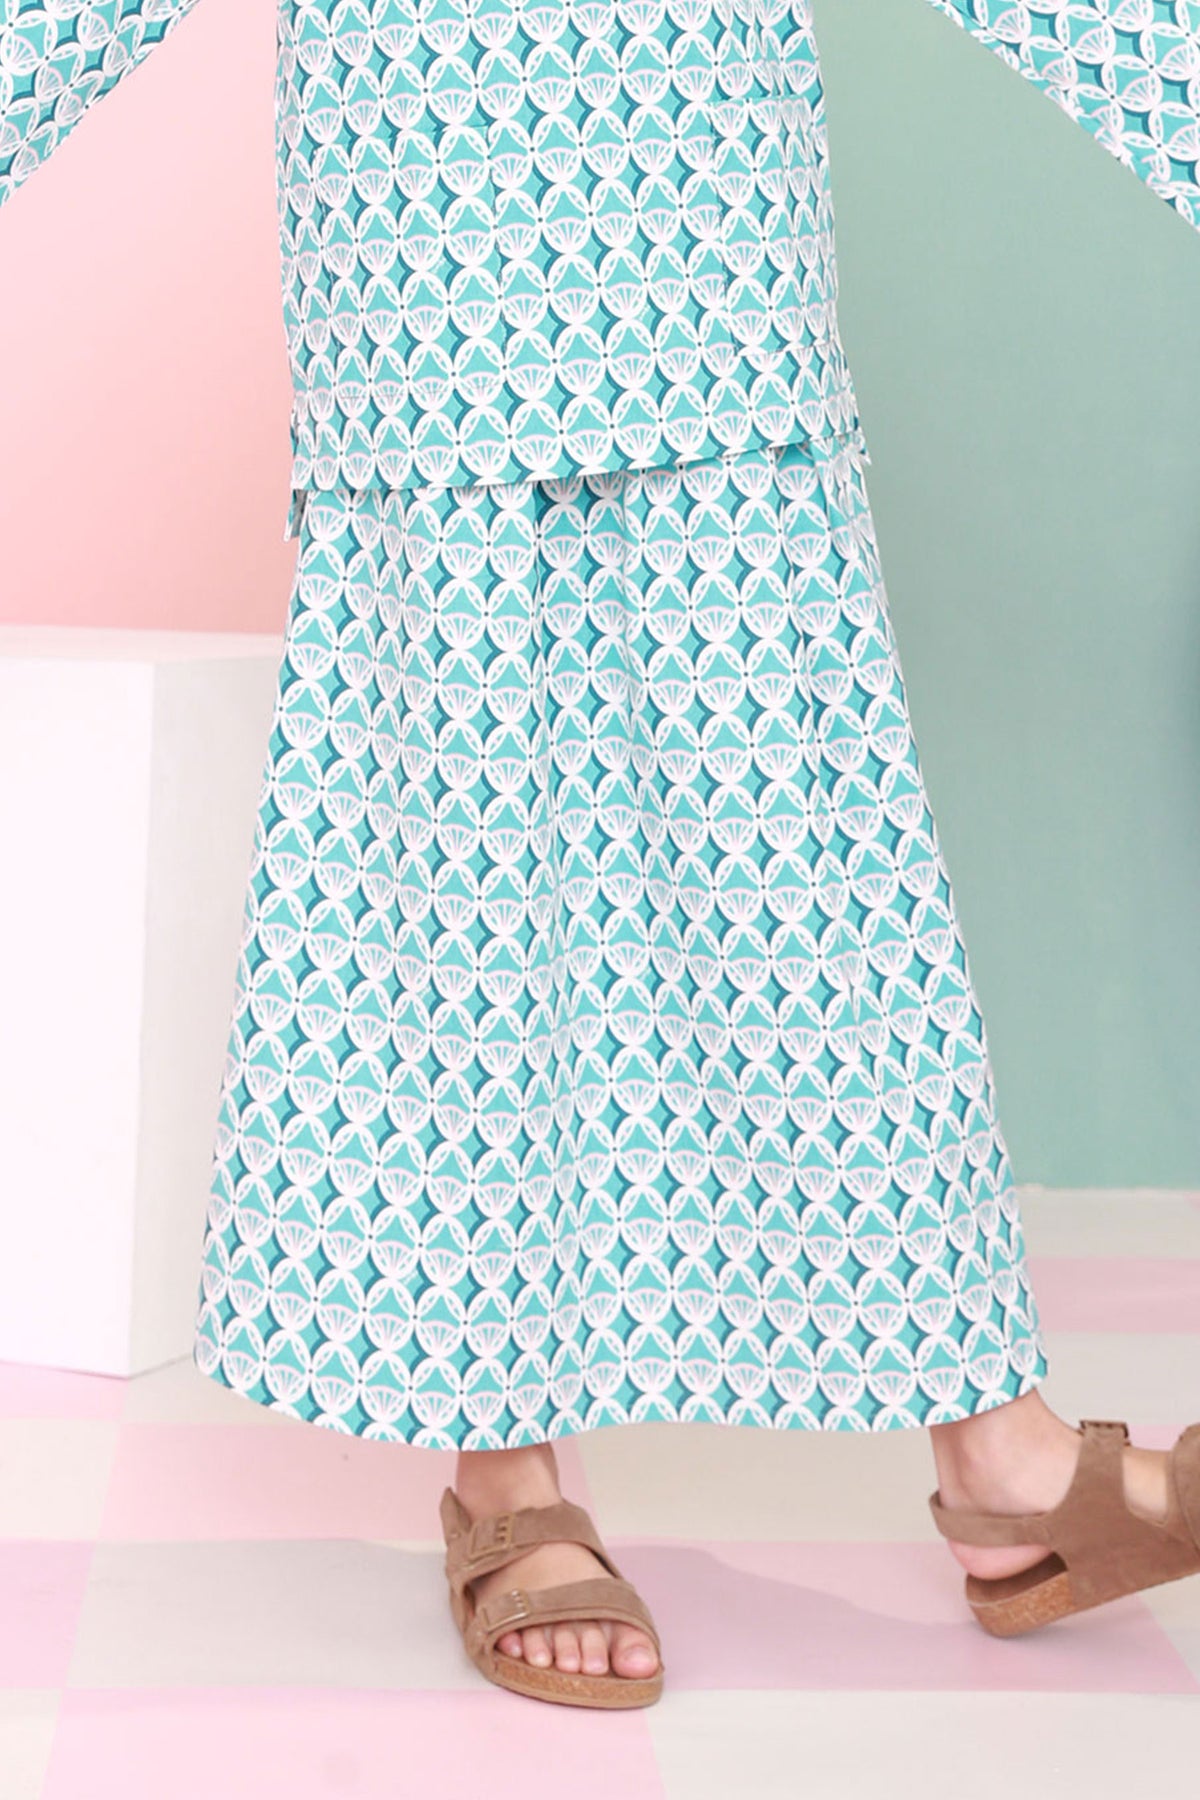 baju raya family sedondon kids girl teacup skirt mint drop